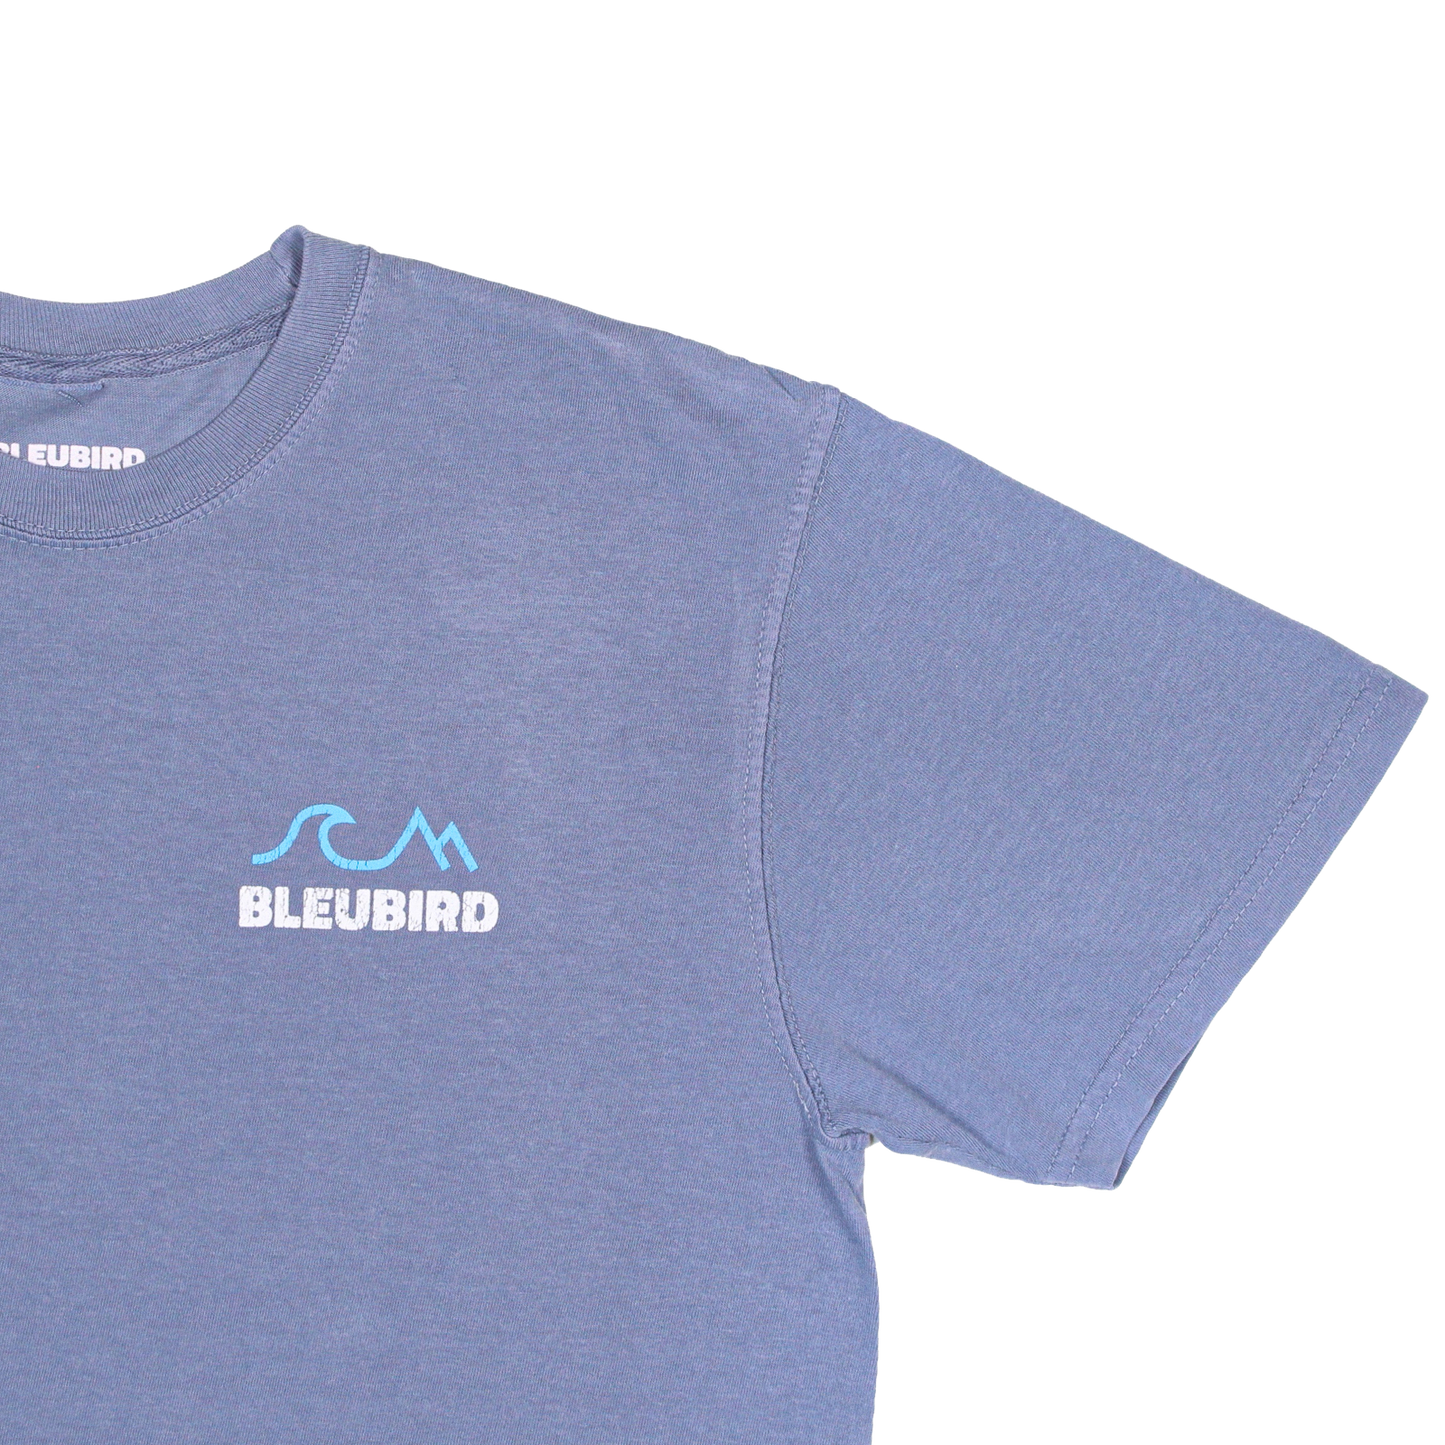 Bleubird T-Shirt - Sky Tides